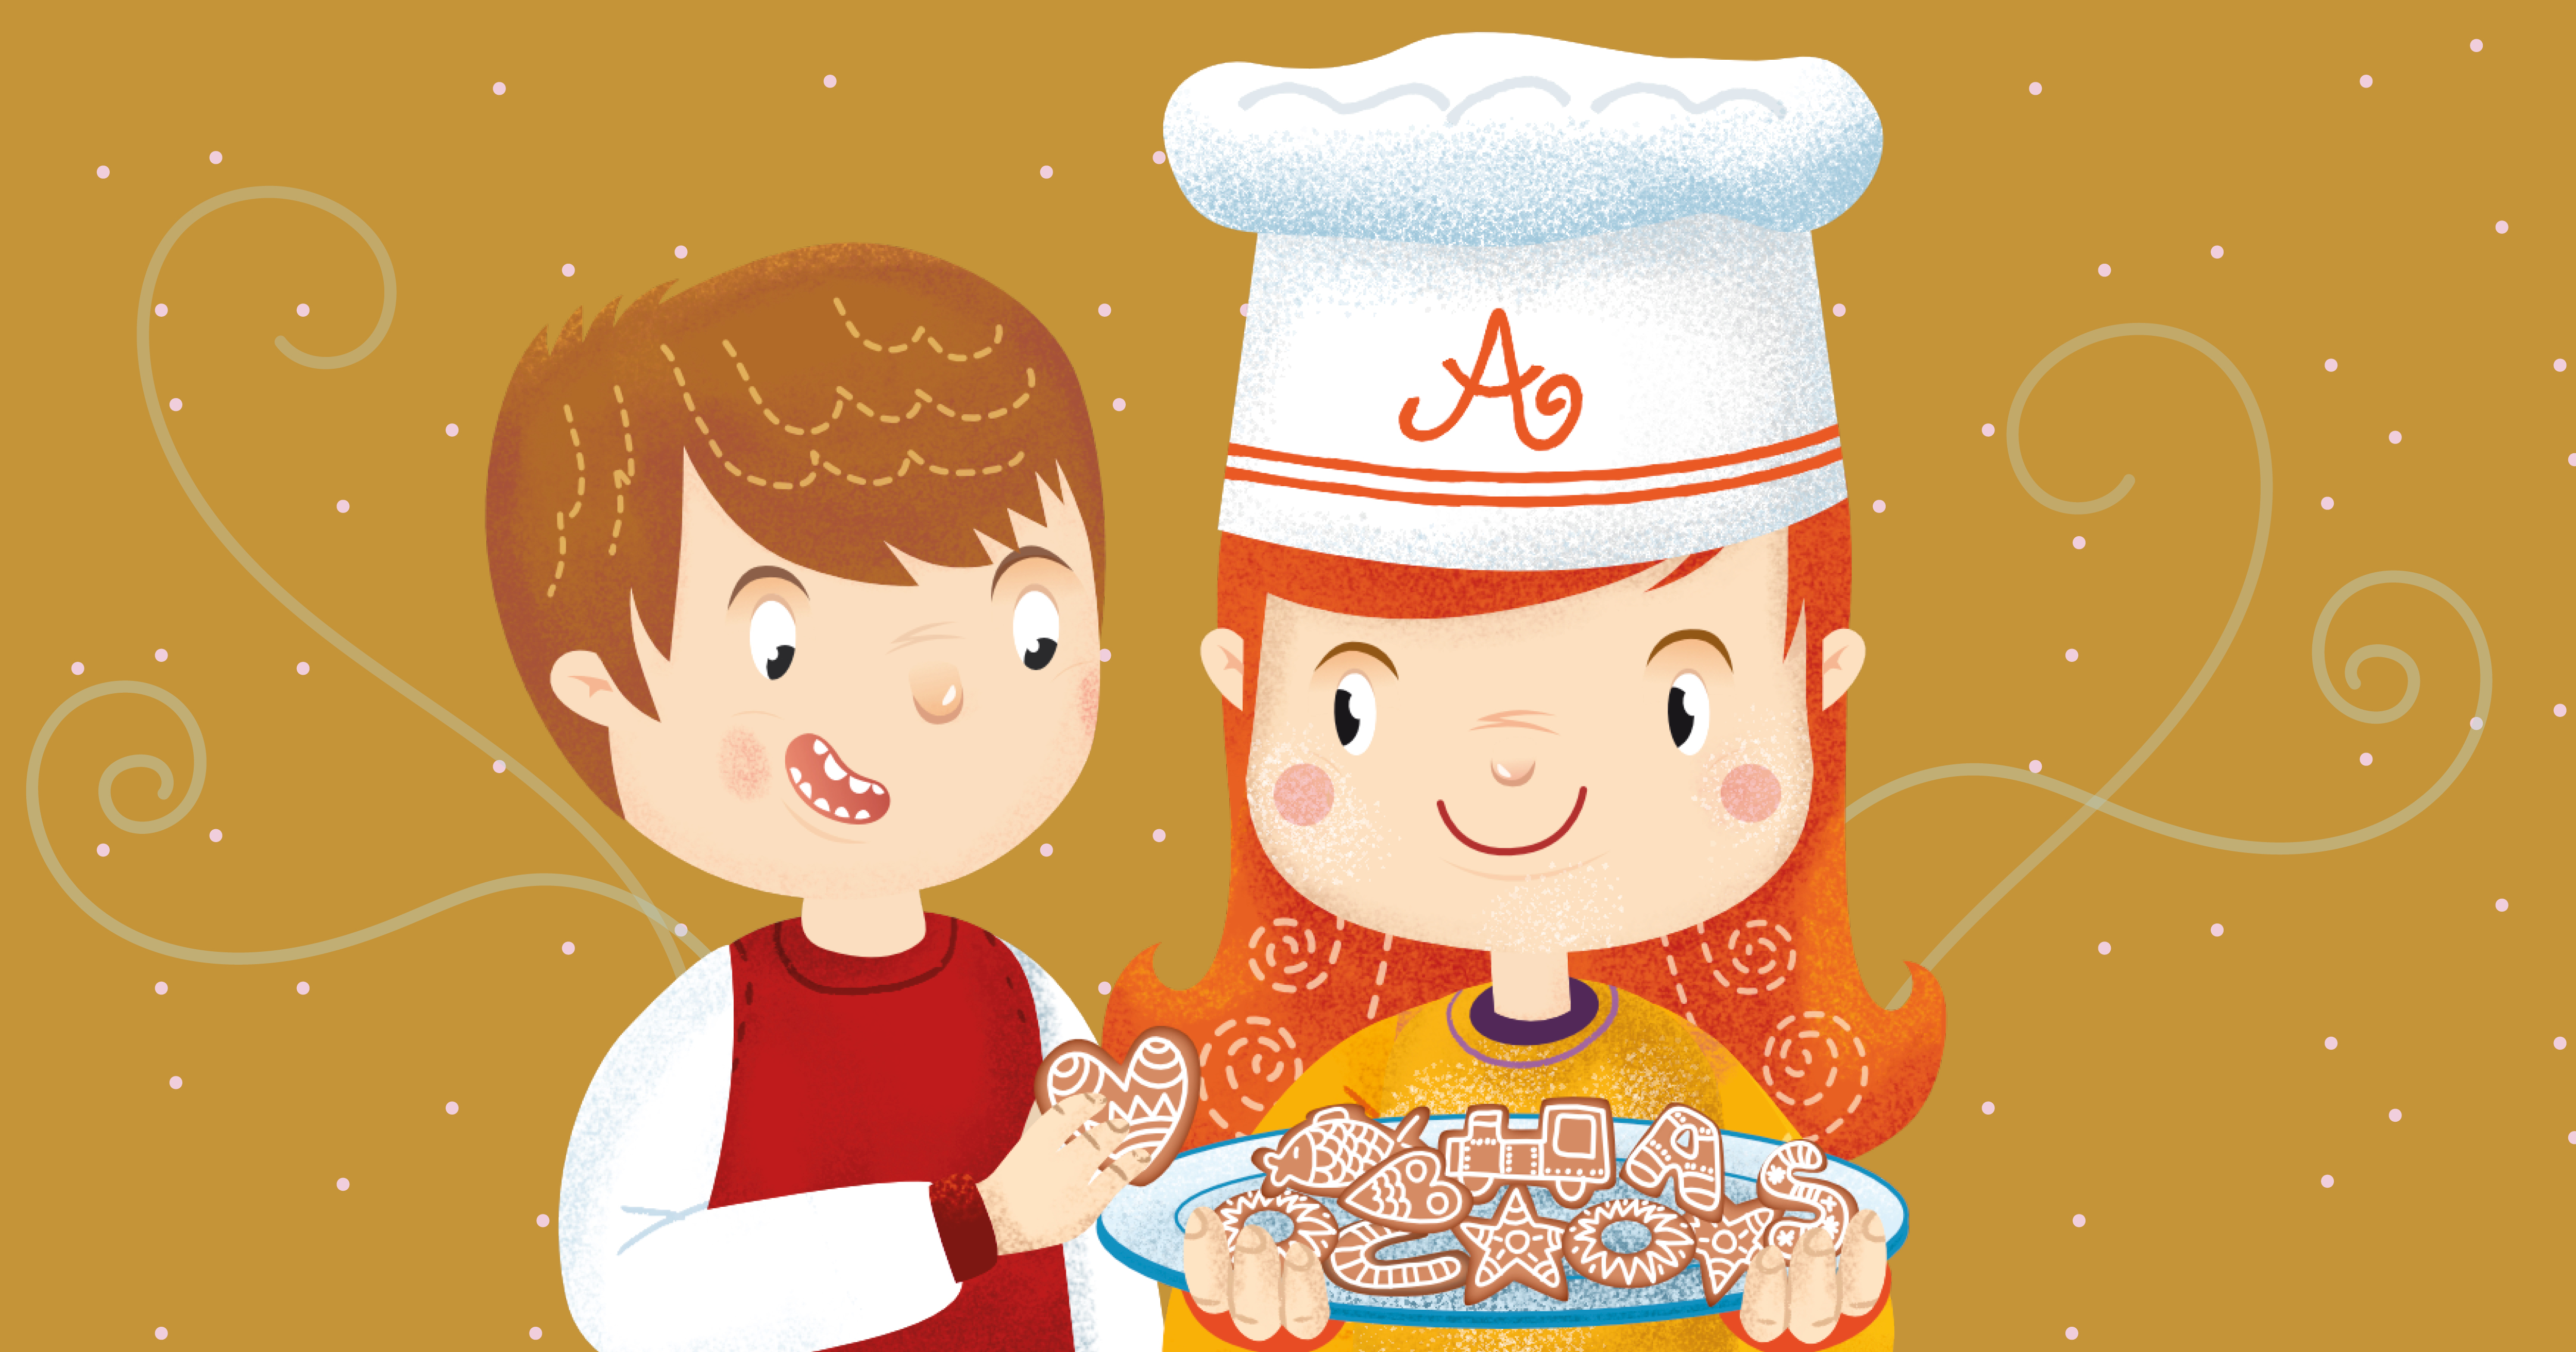 La storia di Natale di Agata e Mattia: Prepariamo i biscotti pan di zenzero